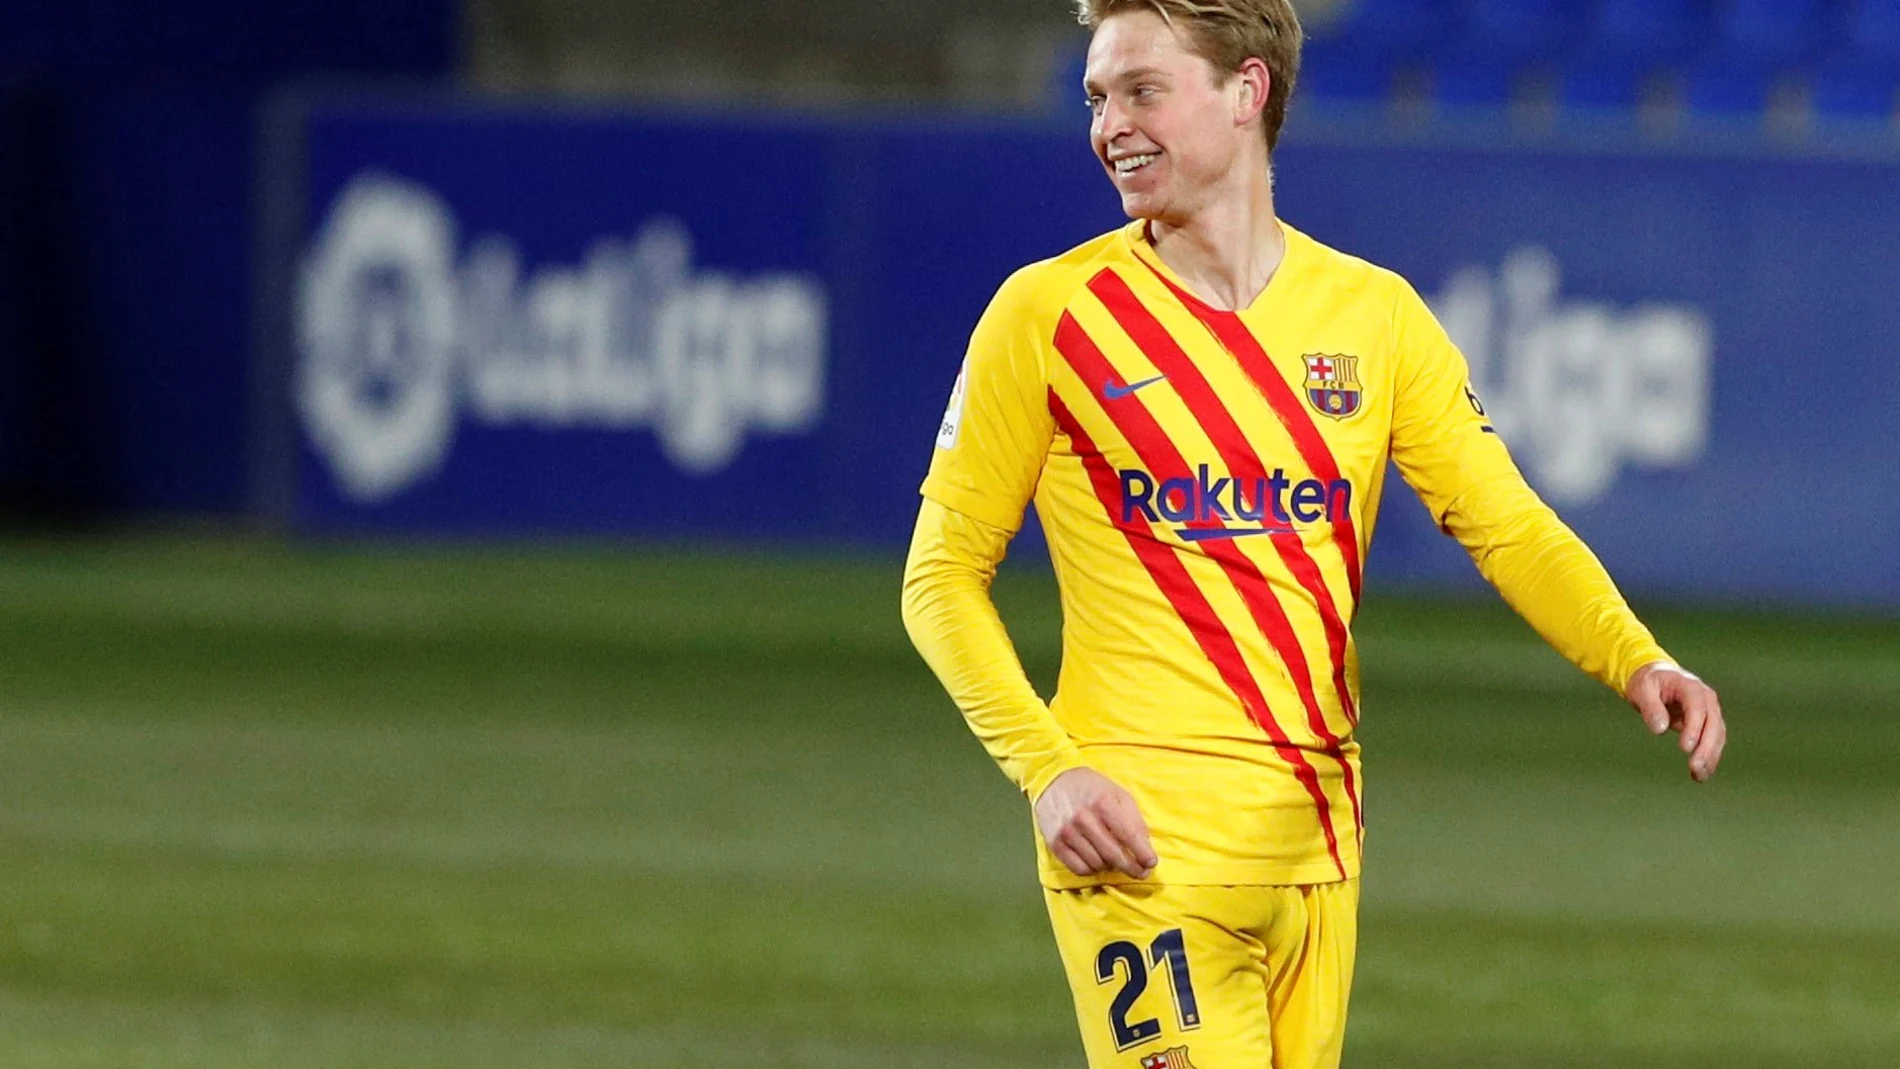 De Jong sonríe durante un partido del Barcelona